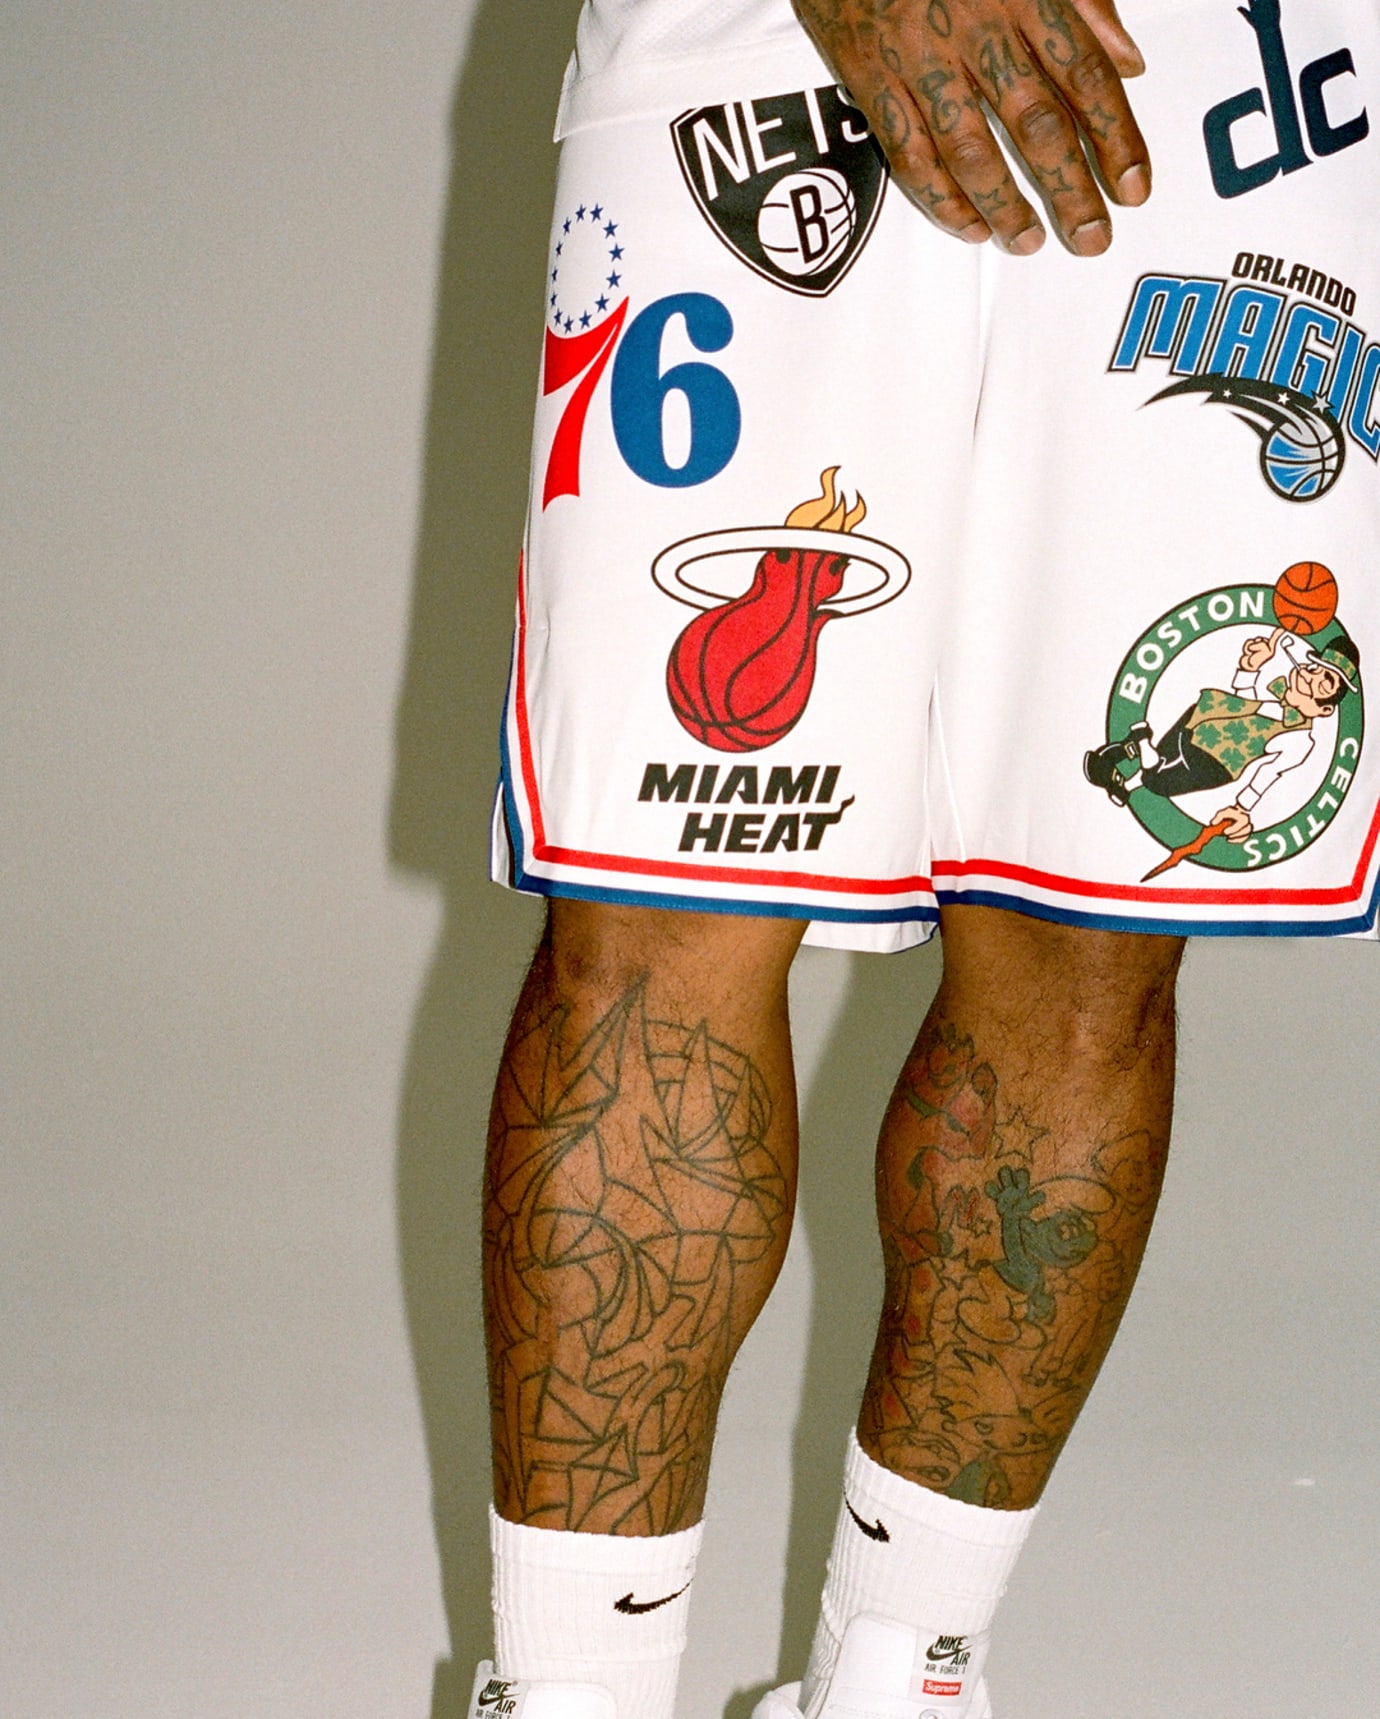 J.R. Smith Supreme x Nike x NBA Jersey & Shorts 5